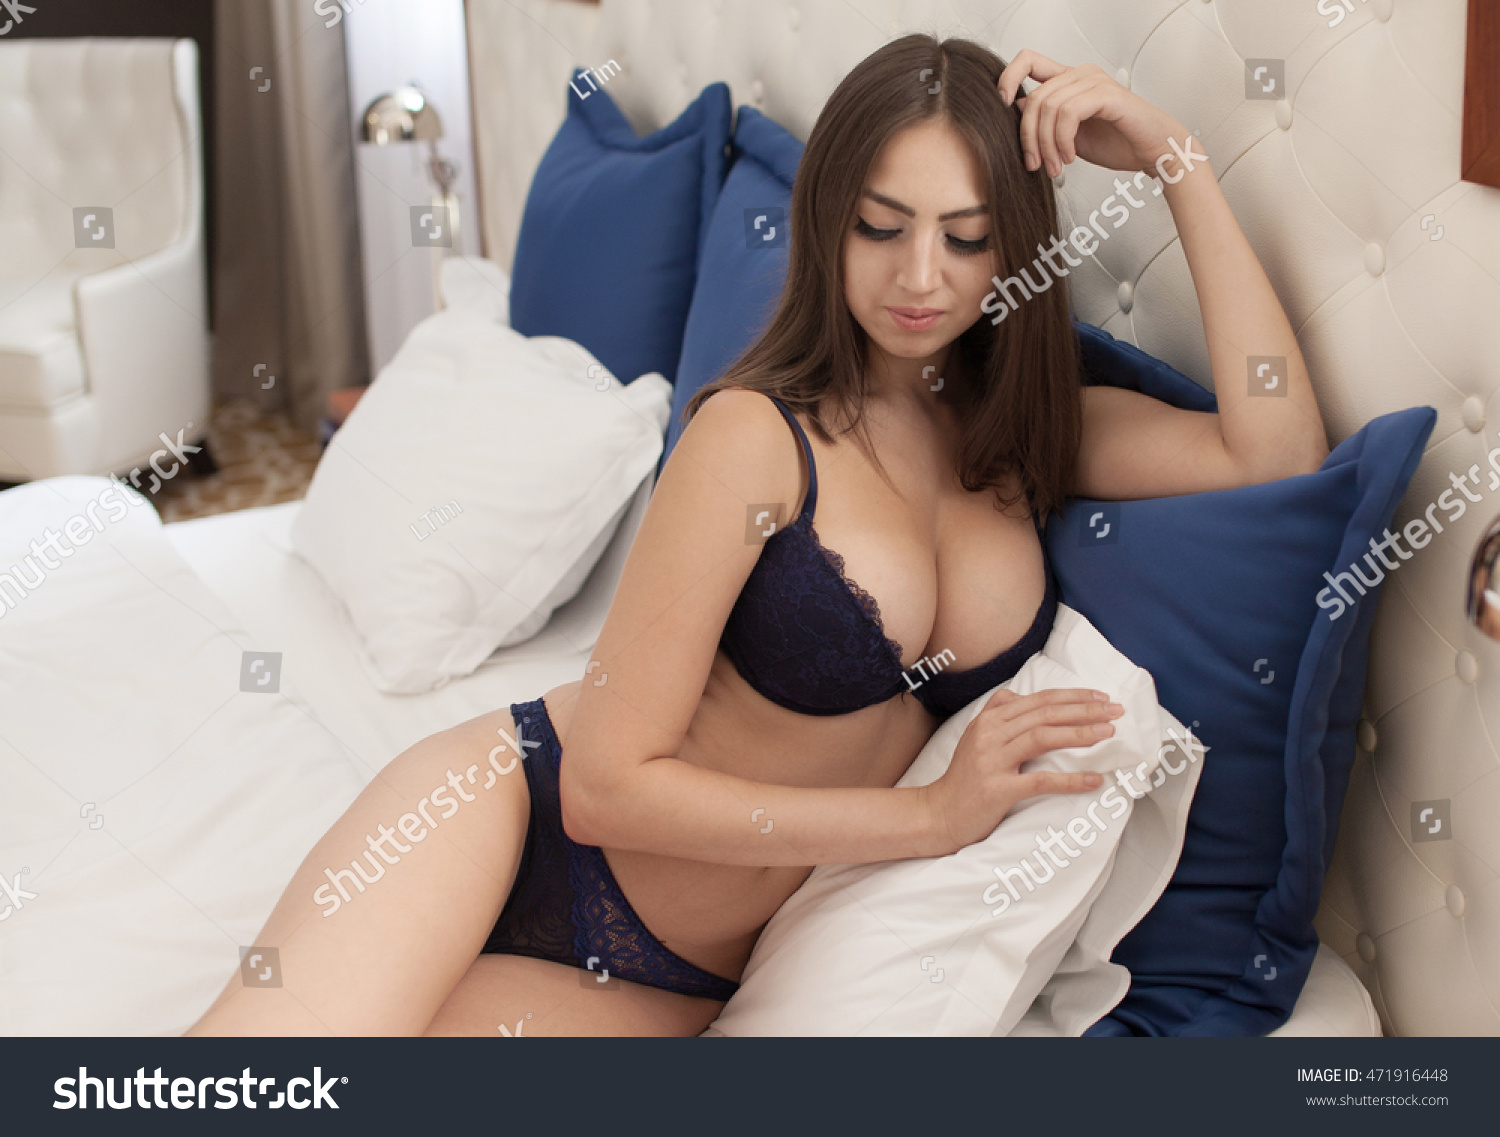 amanda wooton add huge boobs in bed photo